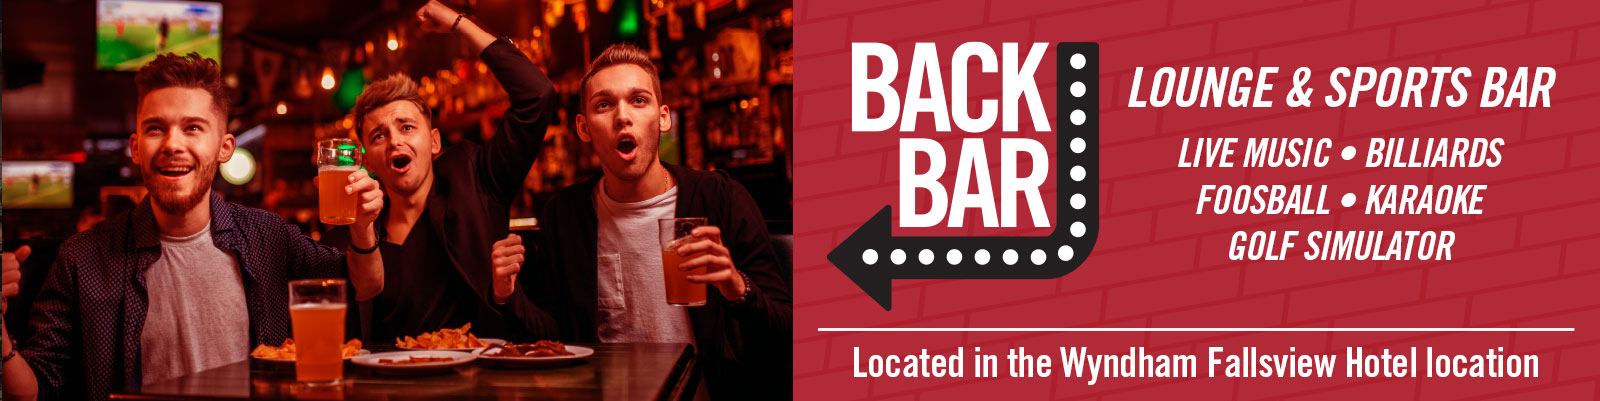 Back Bar Lounge & Sports Bar - TGI Friday's Niagara Falls